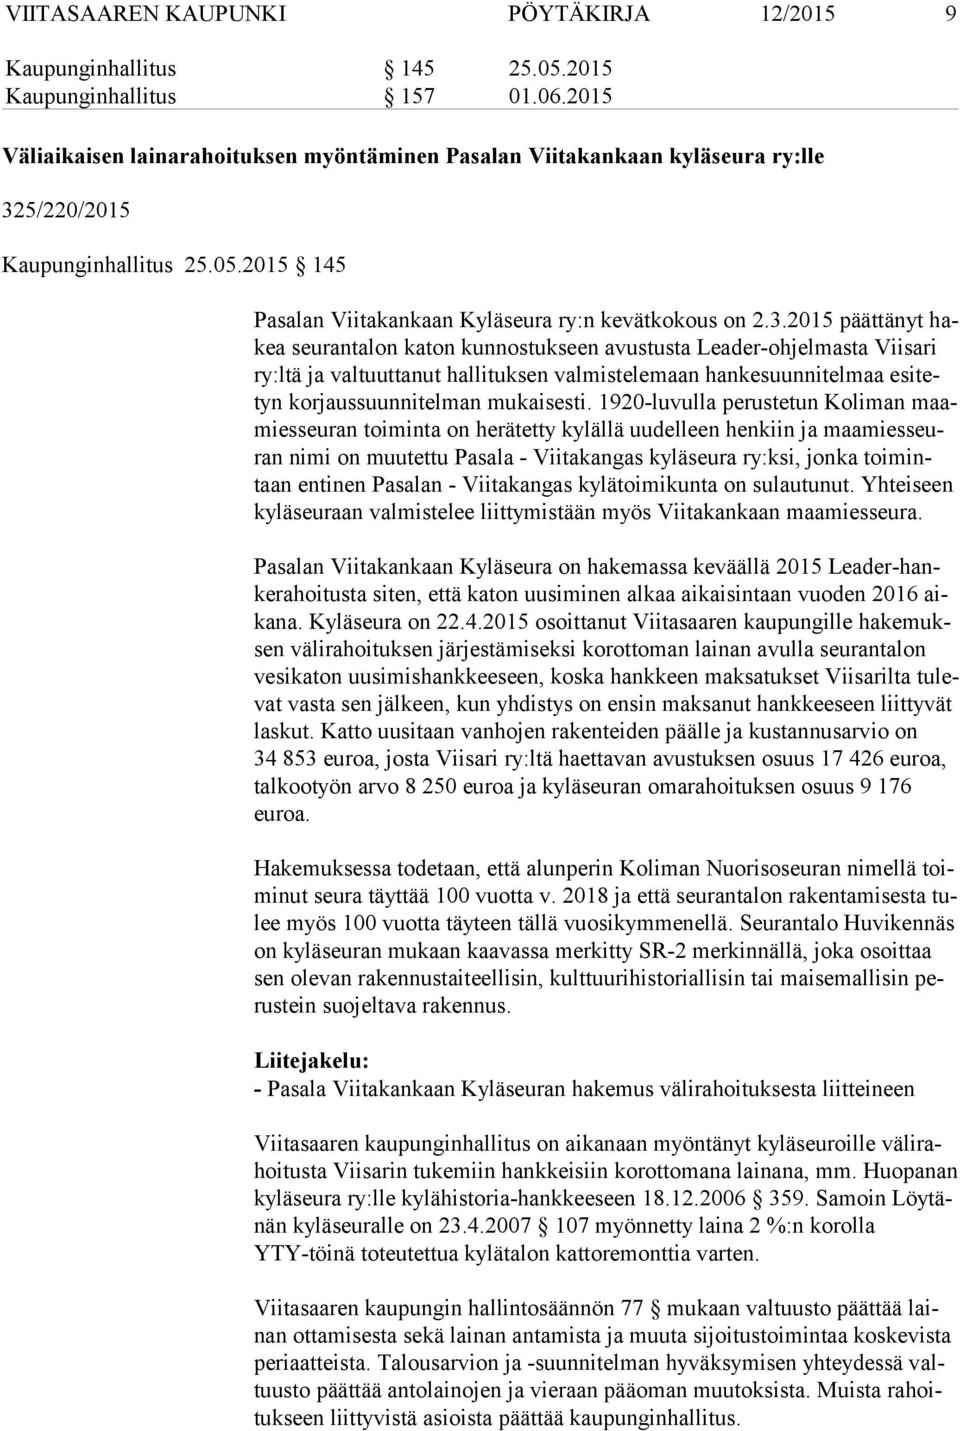 5/220/2015 Kaupunginhallitus 25.05.2015 145 Pasalan Viitakankaan Kyläseura ry:n kevätkokous on 2.3.